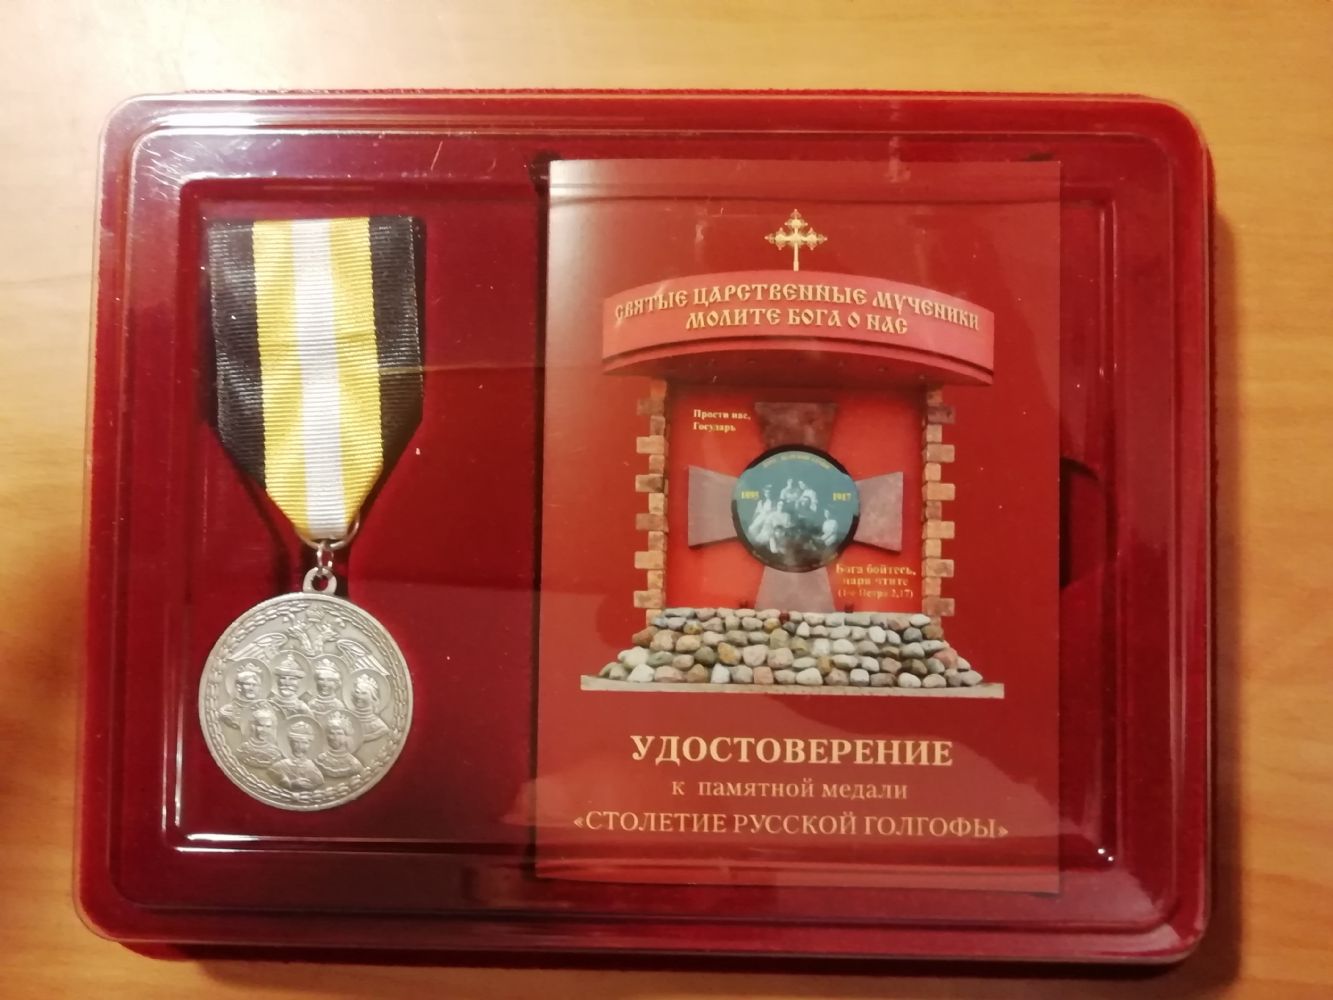 Владыку Вениамина наградили памятной медалью